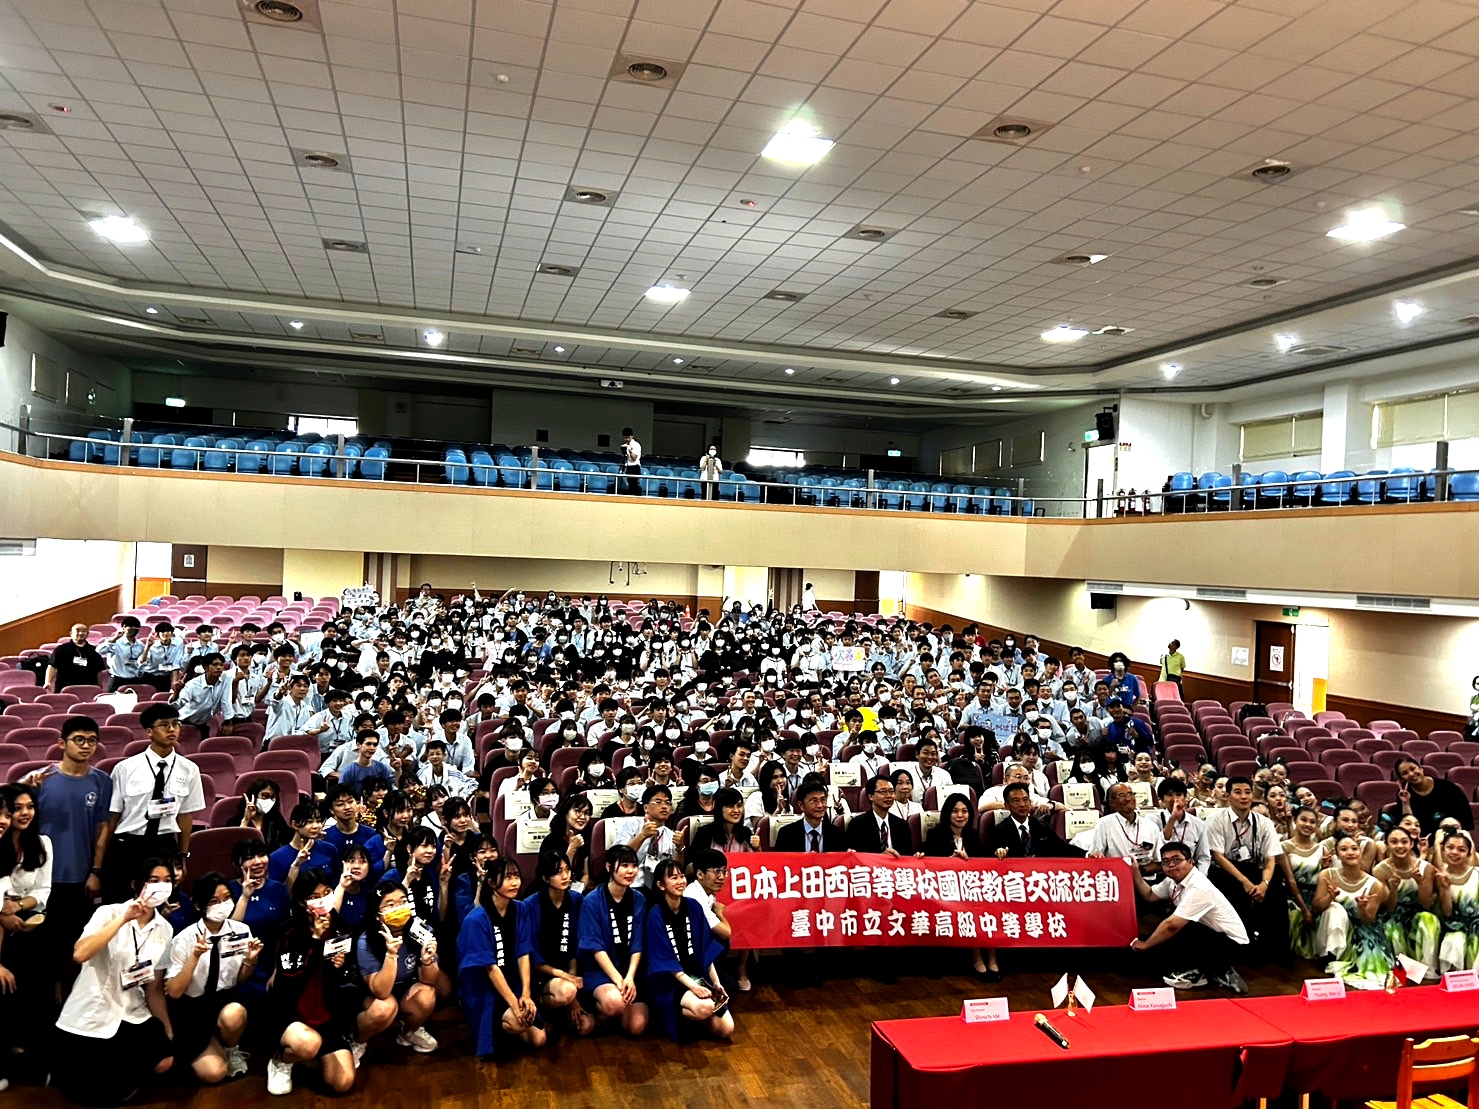 日本高校蒞文華高中參訪 兩校師生交流增進友誼